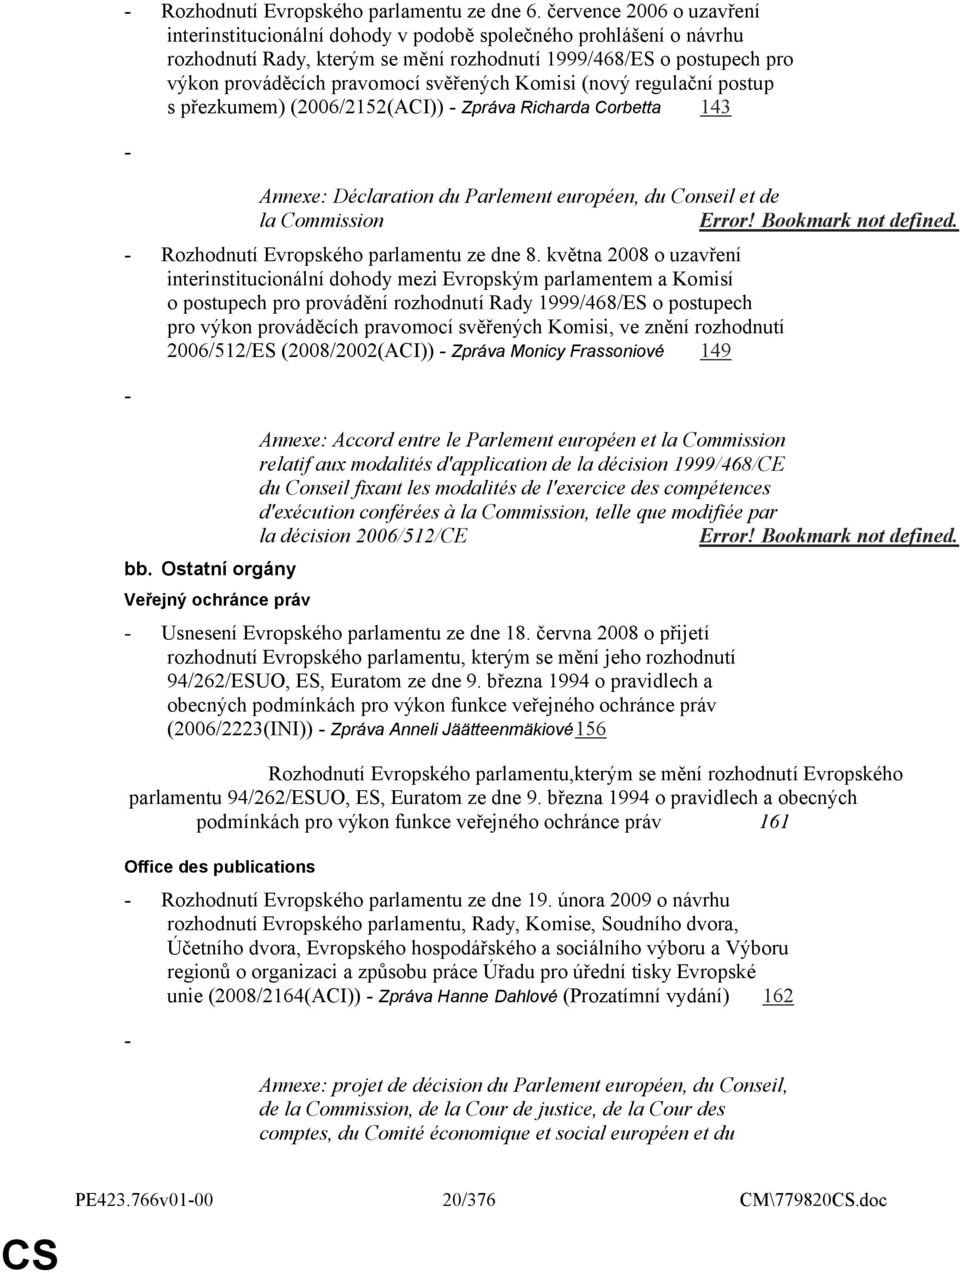 svěřených Komisi (nový regulační postup s přezkumem) (2006/2152(ACI)) - Zpráva Richarda Corbetta 143 - Annexe: Déclaration du Parlement européen, du Conseil et de la Commission Error!